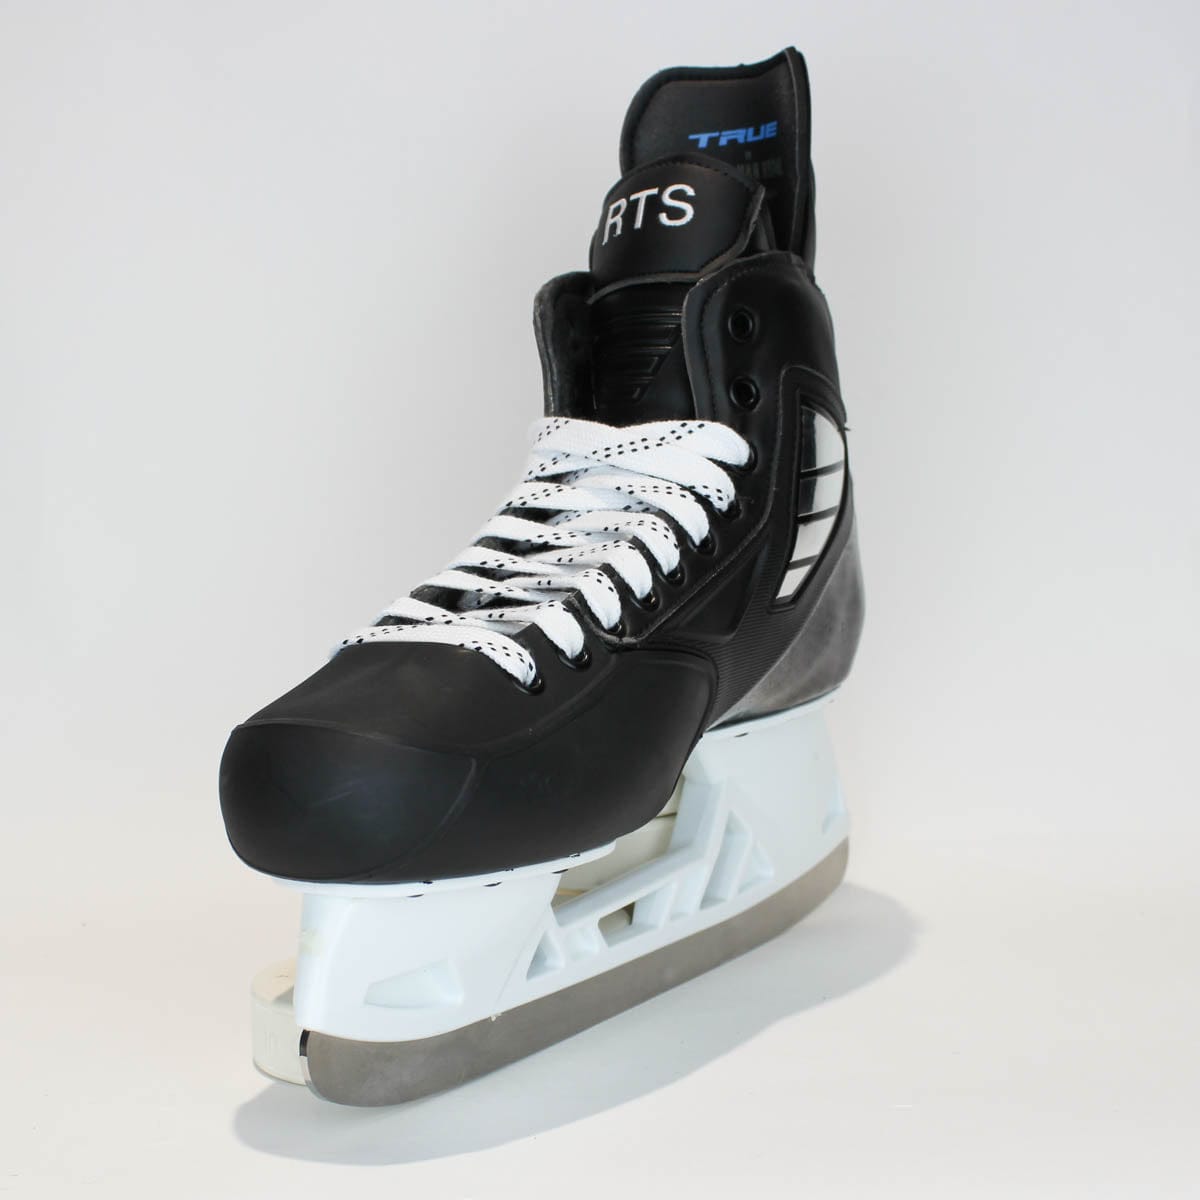 TRUE Player Senior Hockey Skates - Pro Stock - VH Holder - "RTS" - Size 11